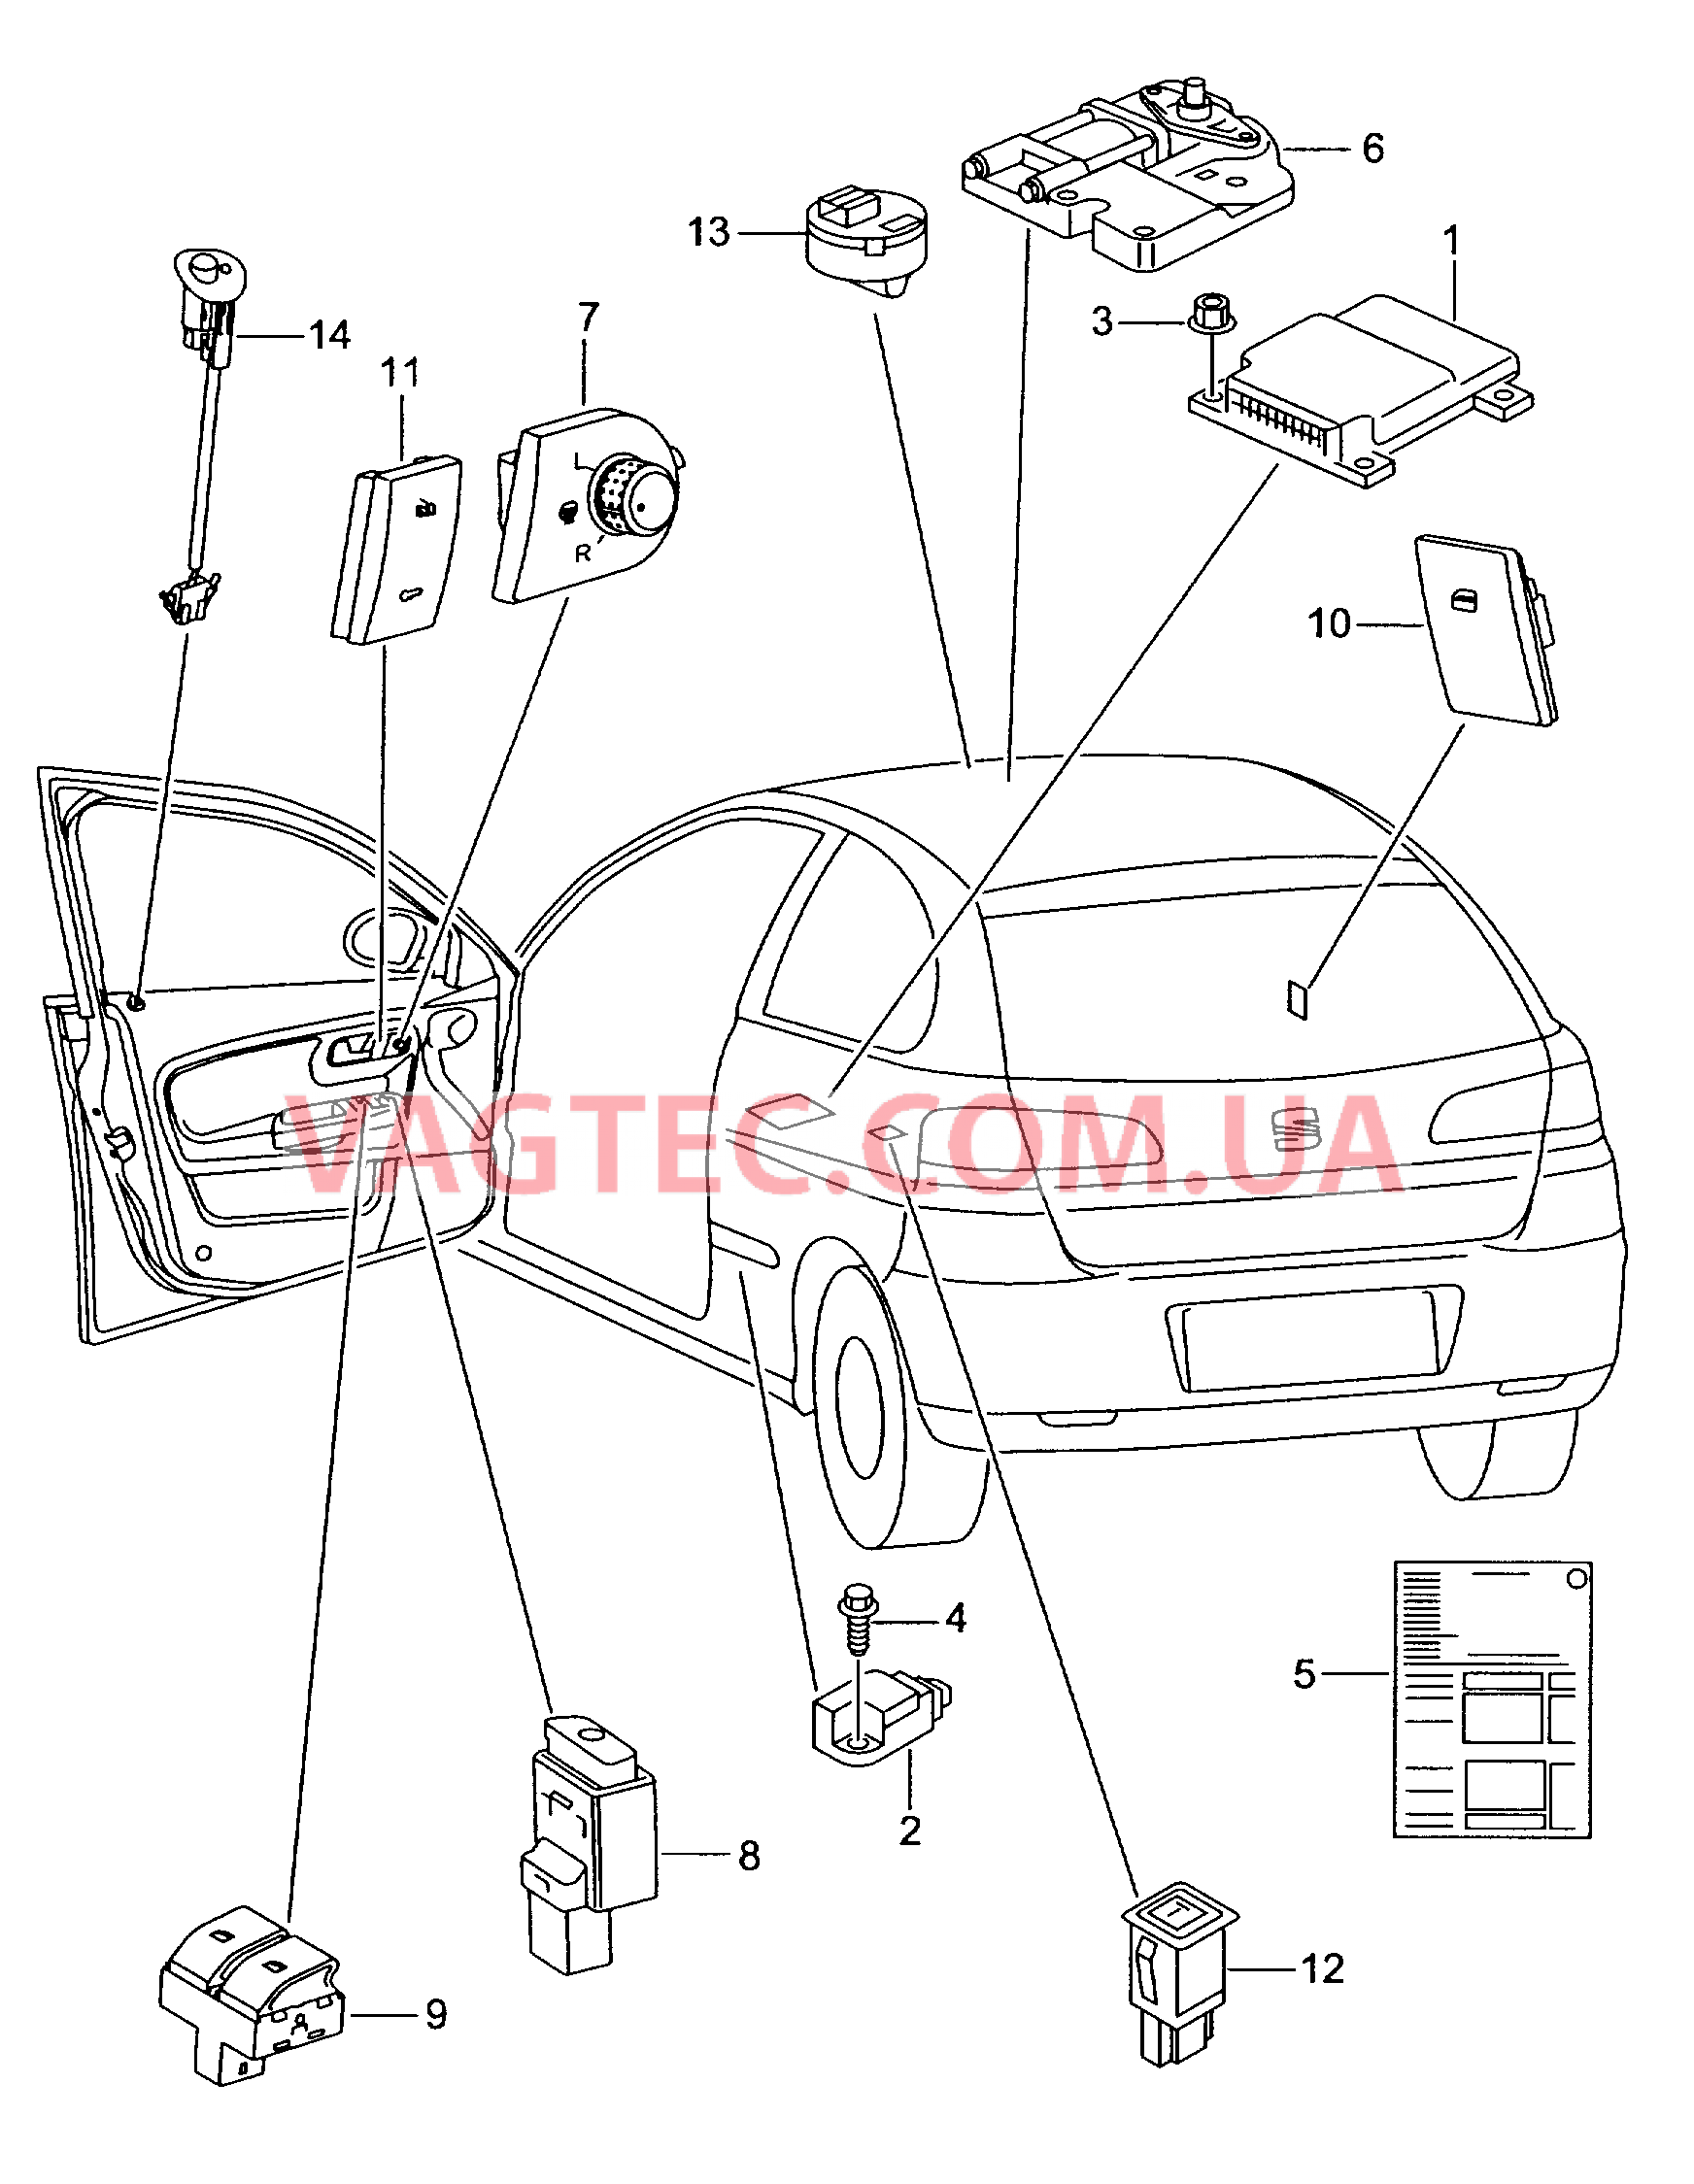 Электродетали для подуш.безоп. Мотор привода люка Выключатель в обивке двери Лампа, контрольная для противоугонной системы  для SEAT Ibiza 2009